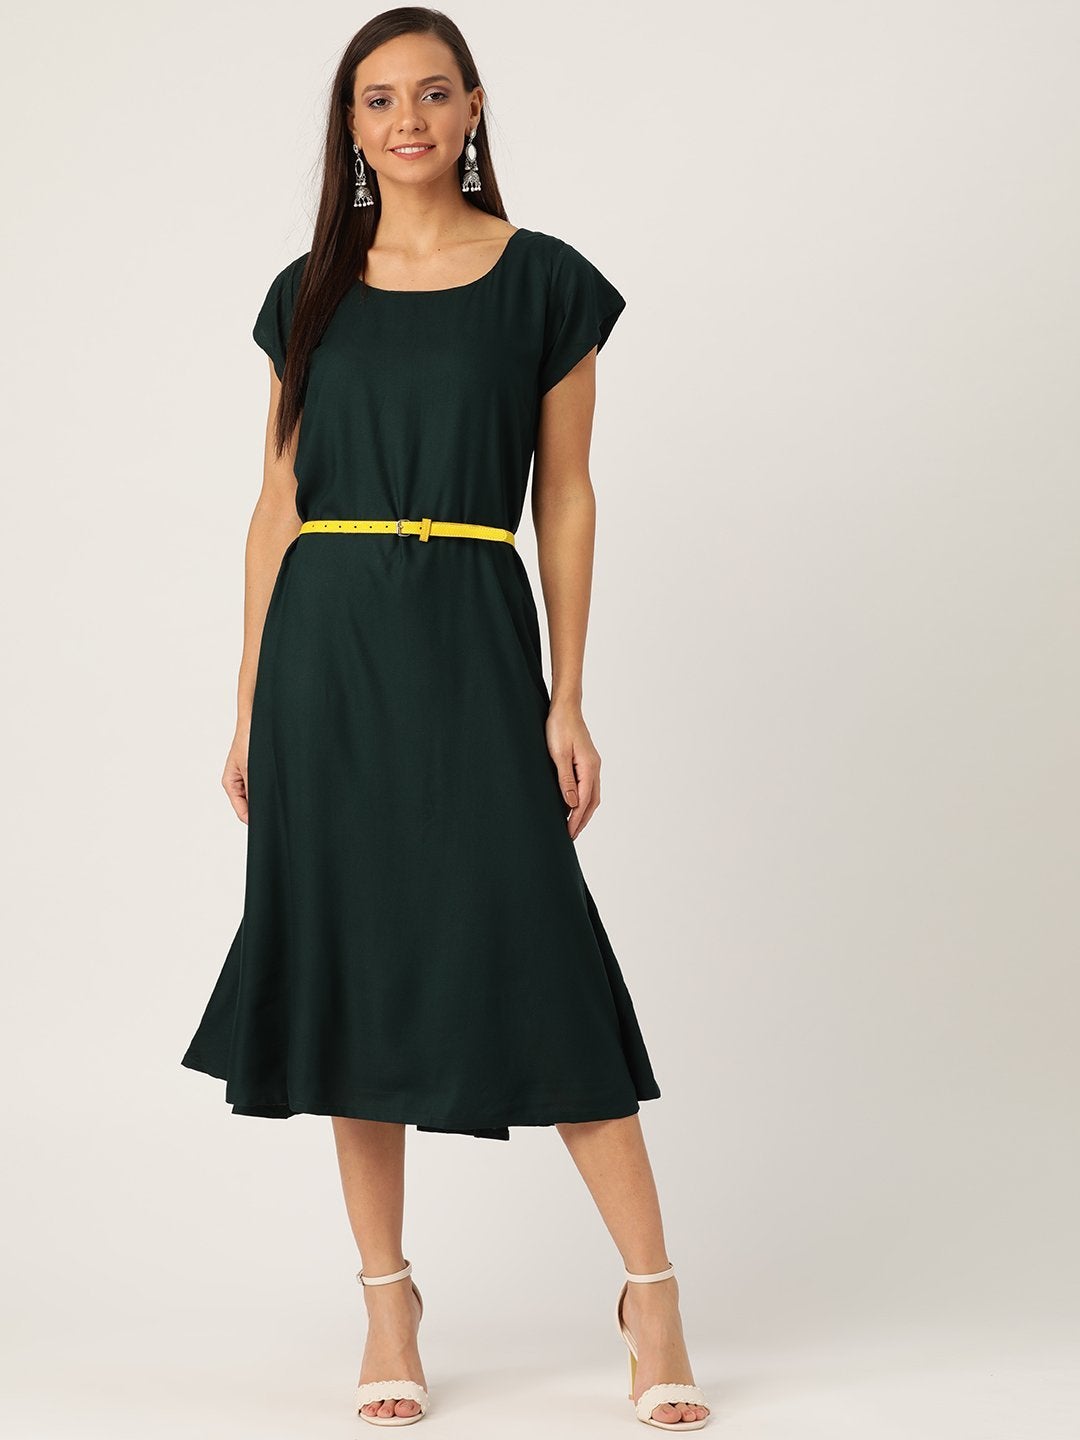 Women's Dark Green Dress Yellow Belt - InWeave